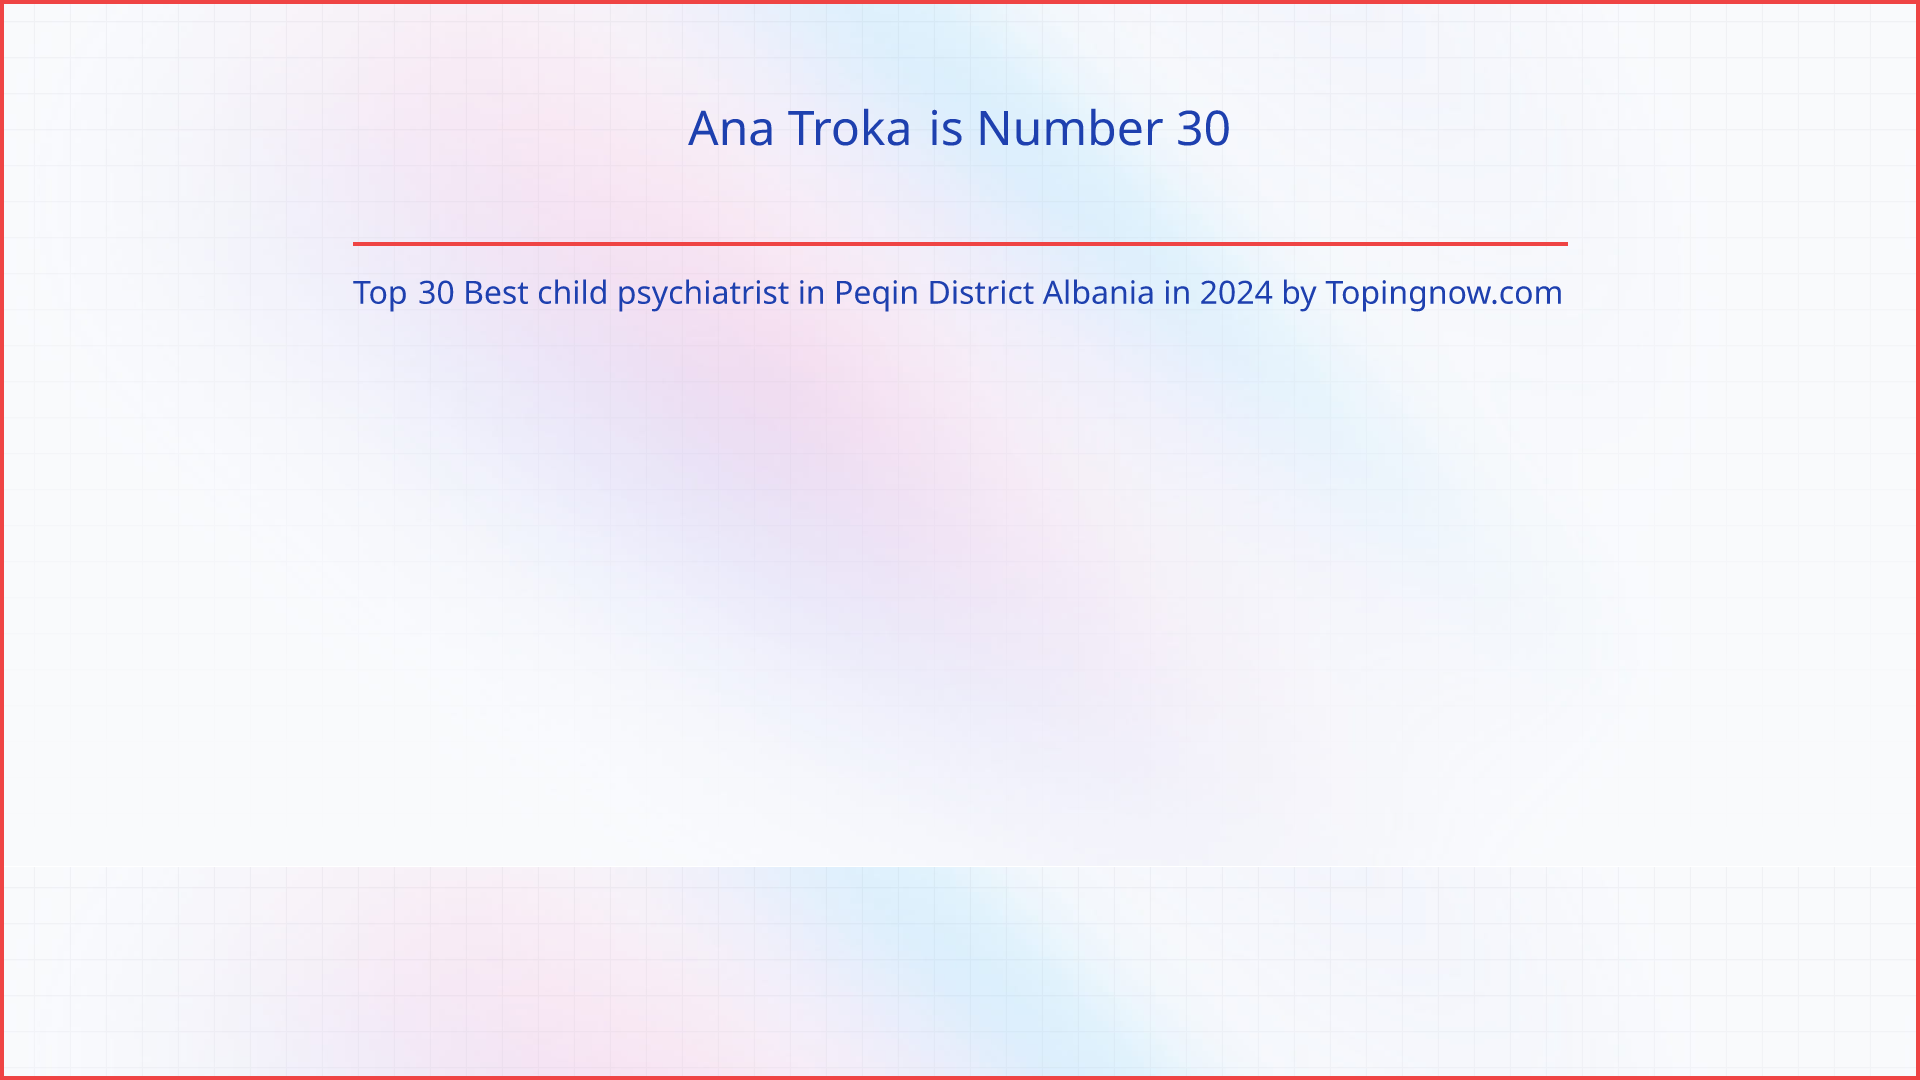 Ana Troka: Top 30 Best child psychiatrist in Peqin District Albania in 2024